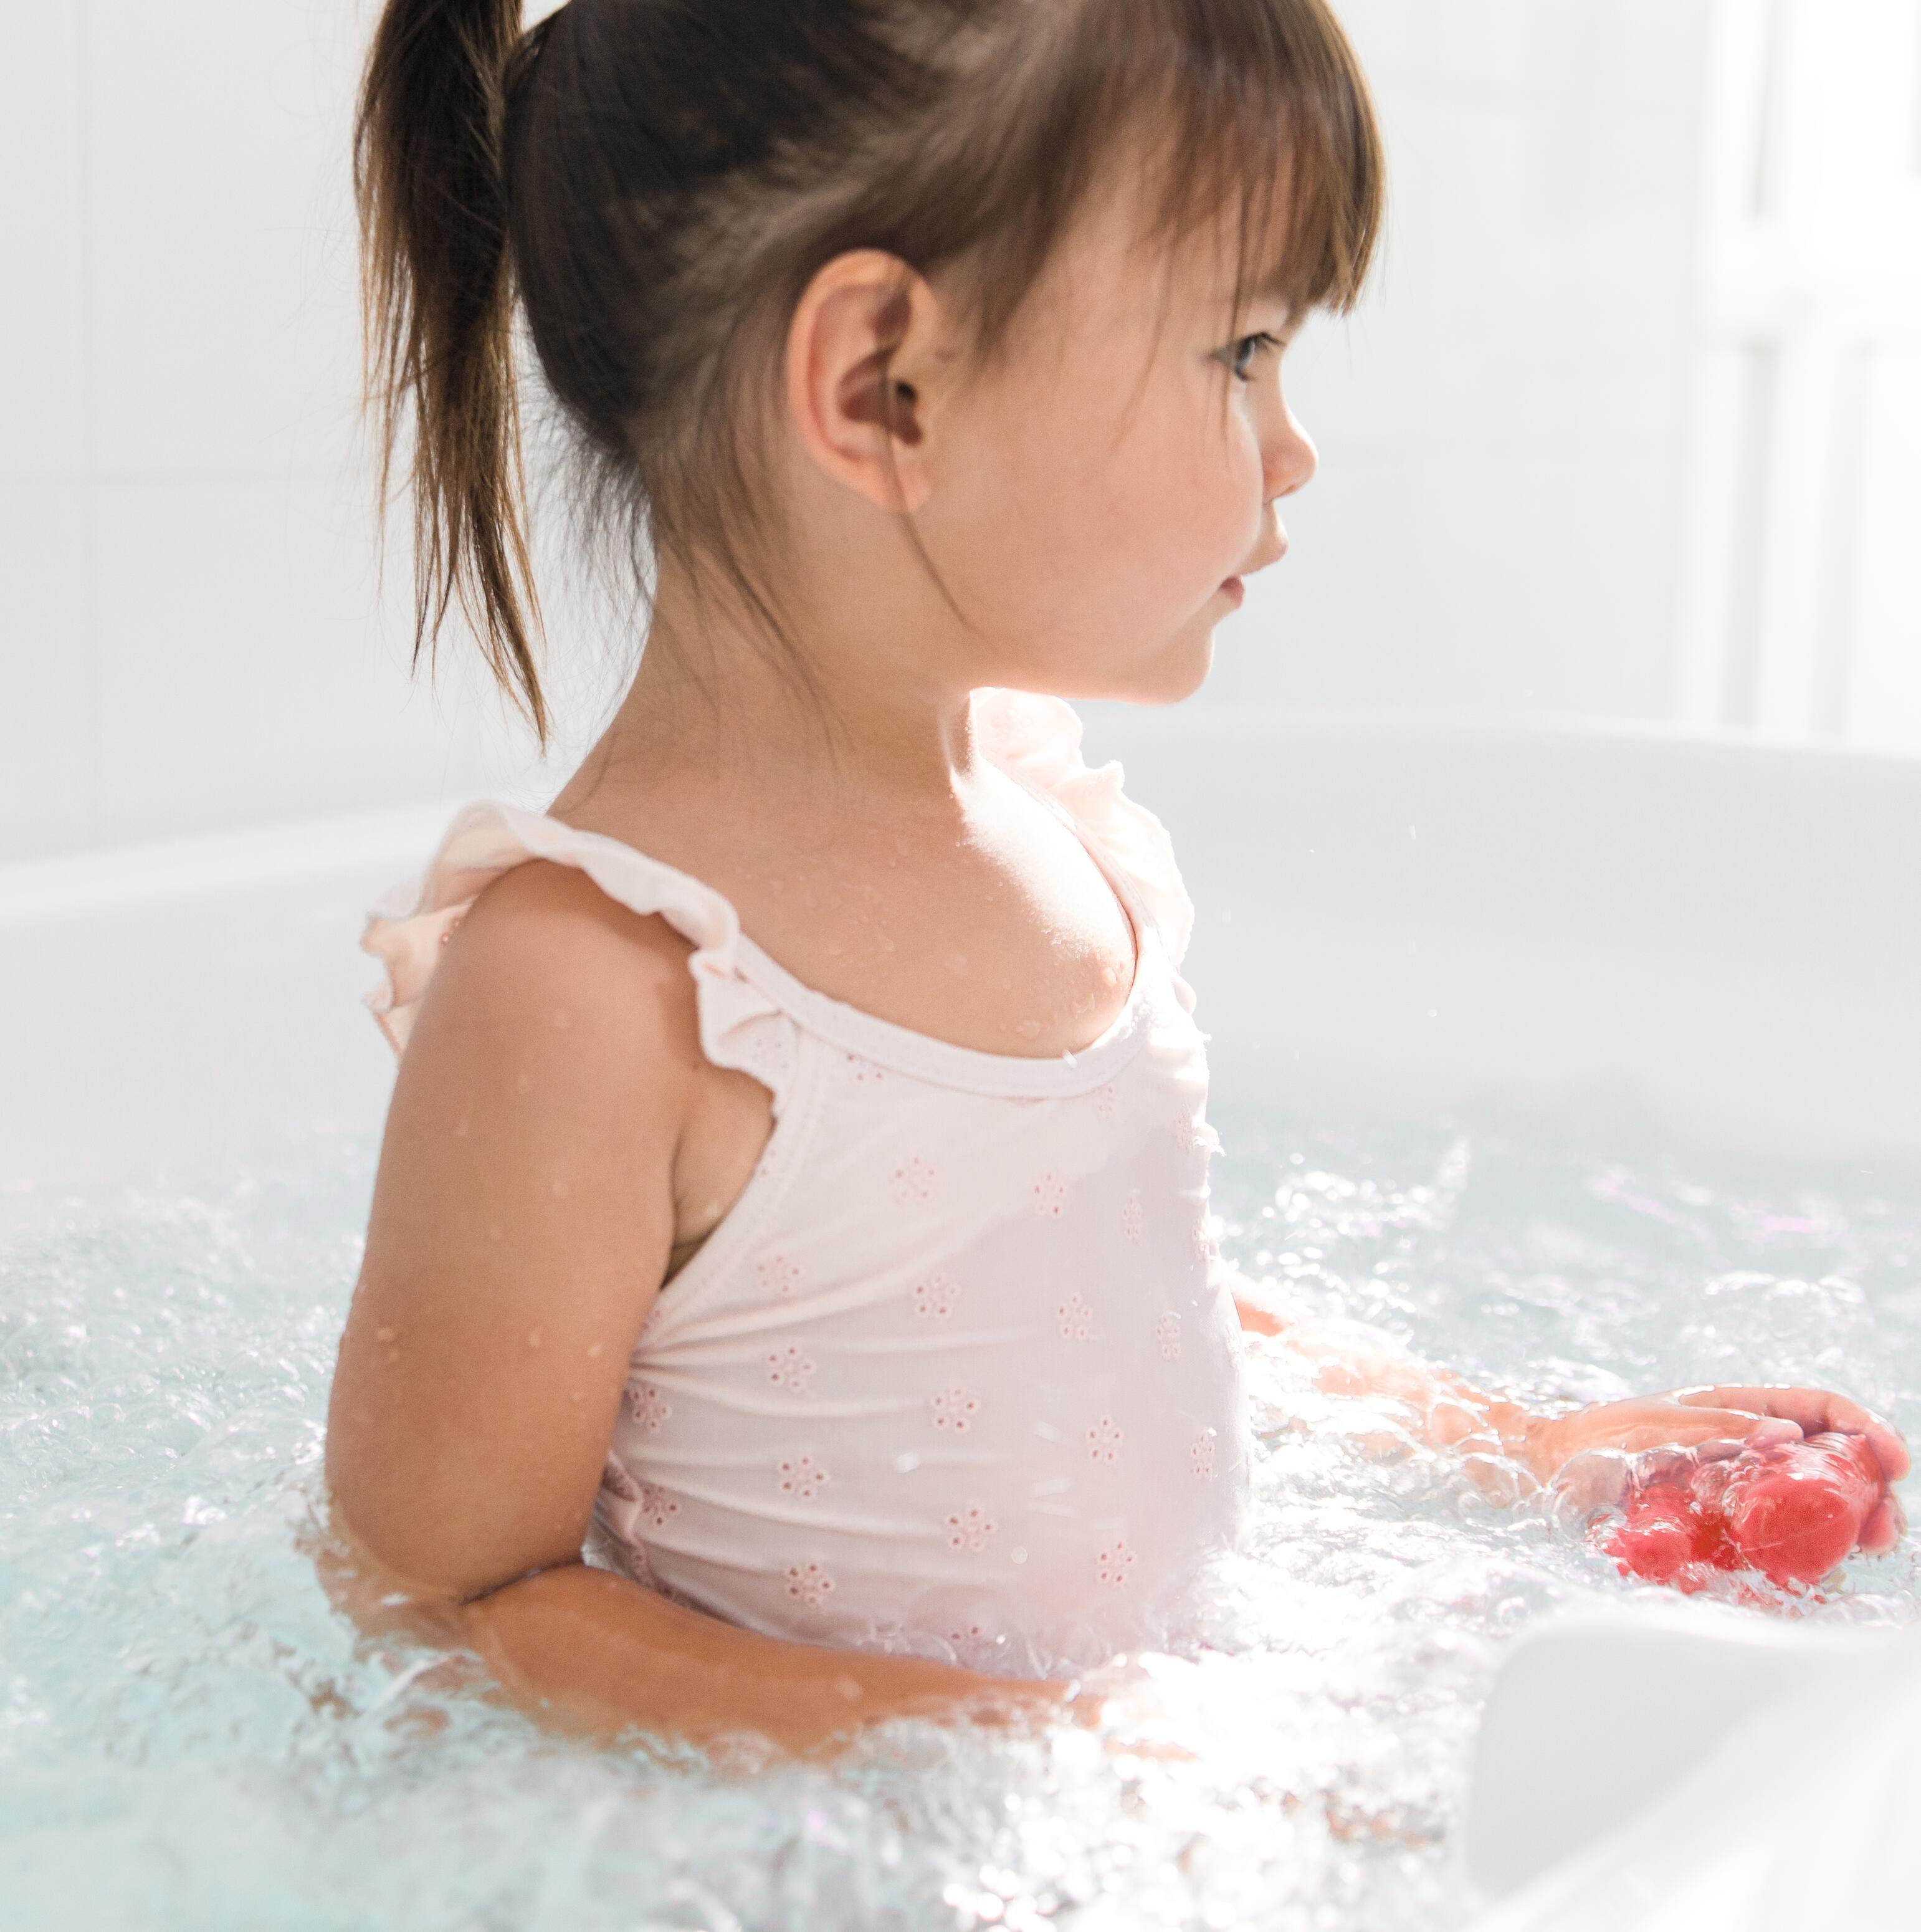 Ekzemerkrankungen und Psoriasis: Kann mein Kind baden?